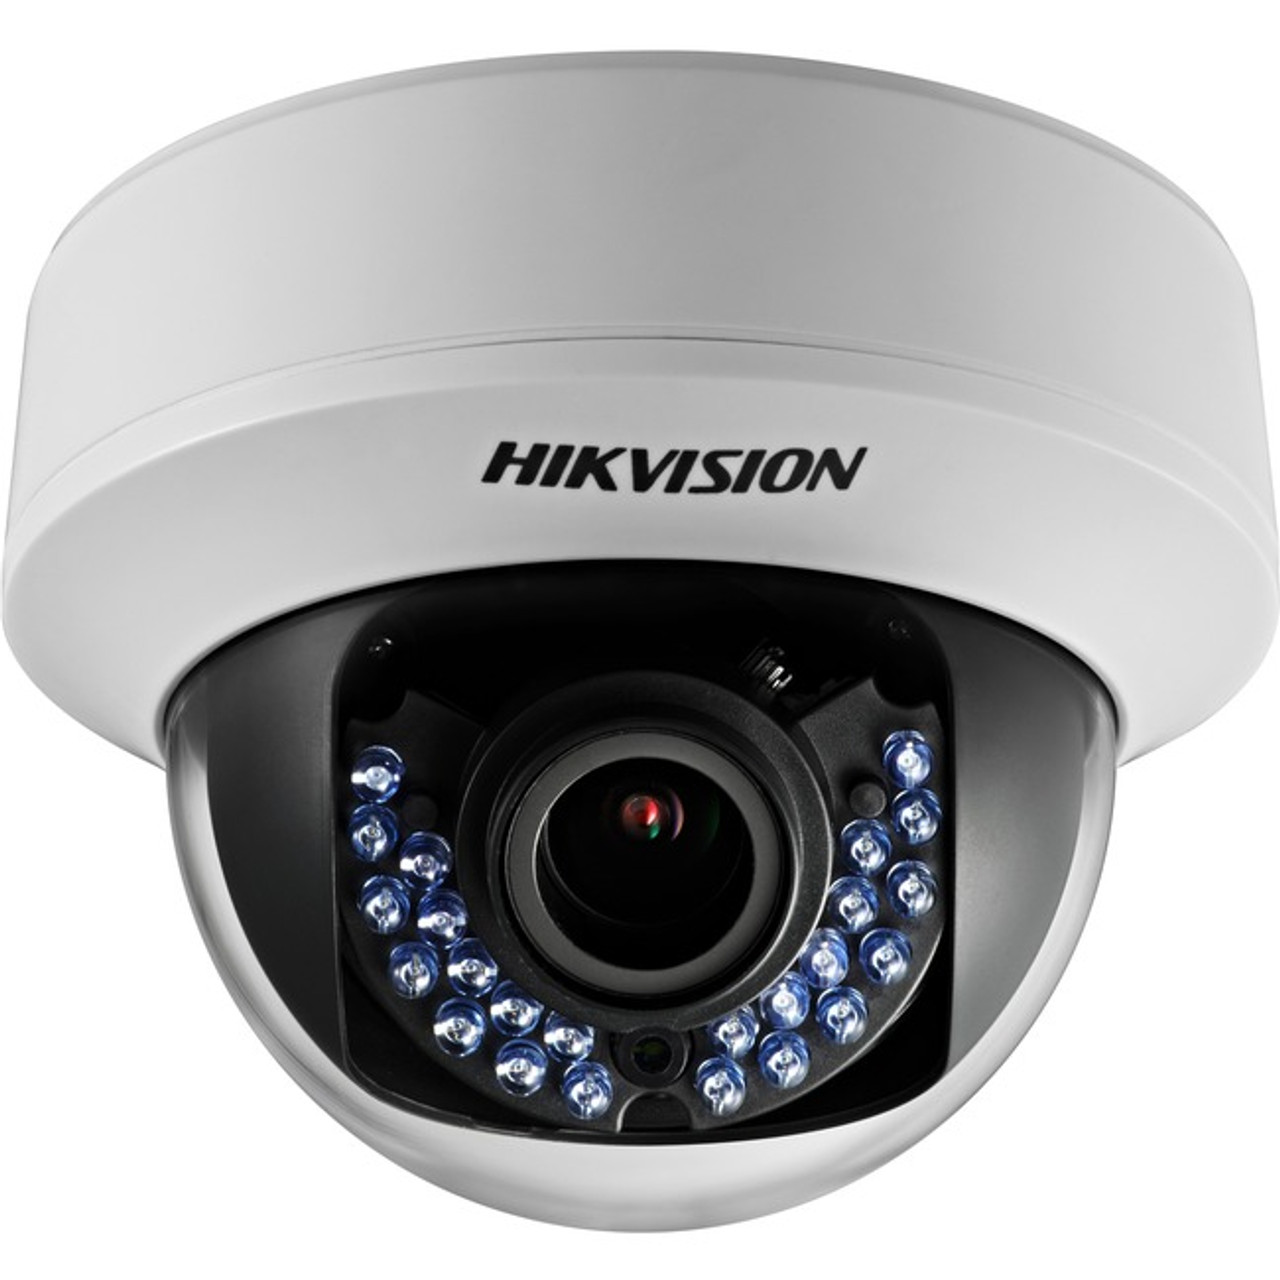 Hikvision DS-2CE56D5T-AIRZ